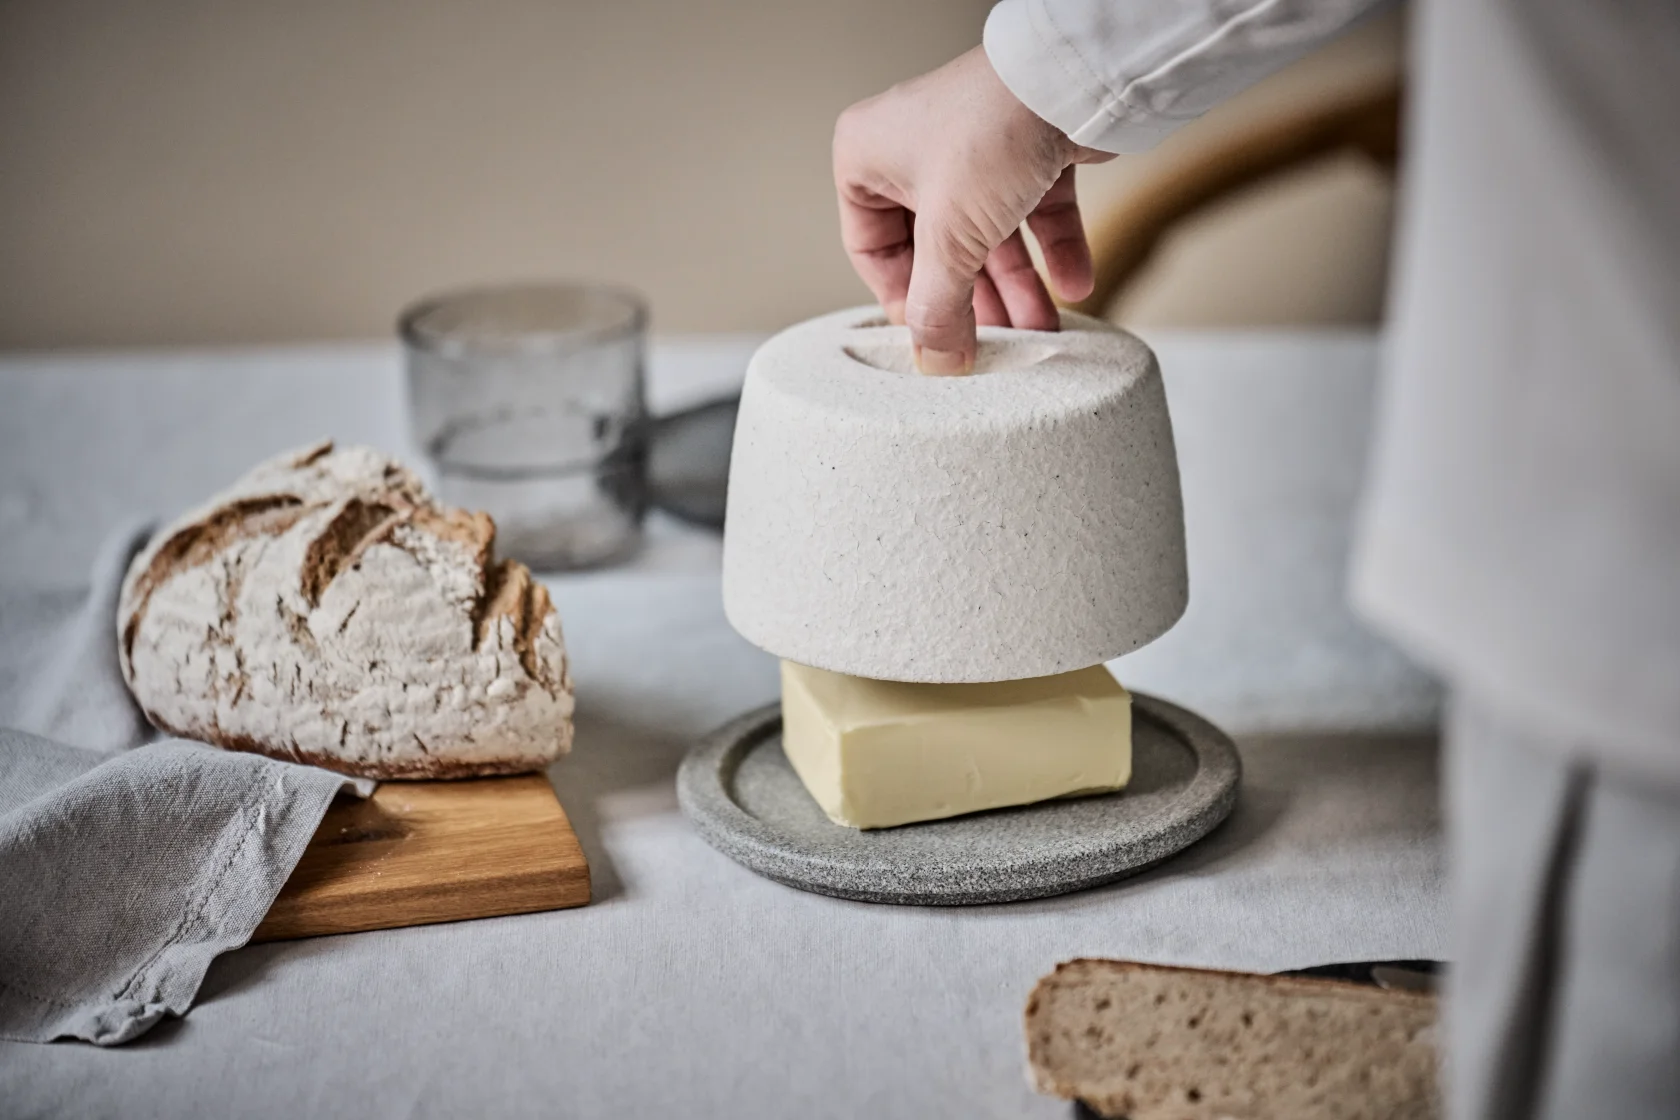 Butter Perfekt Kühlen: Entdecken Sie den revolutionären Butterkühler von Denk Keramik